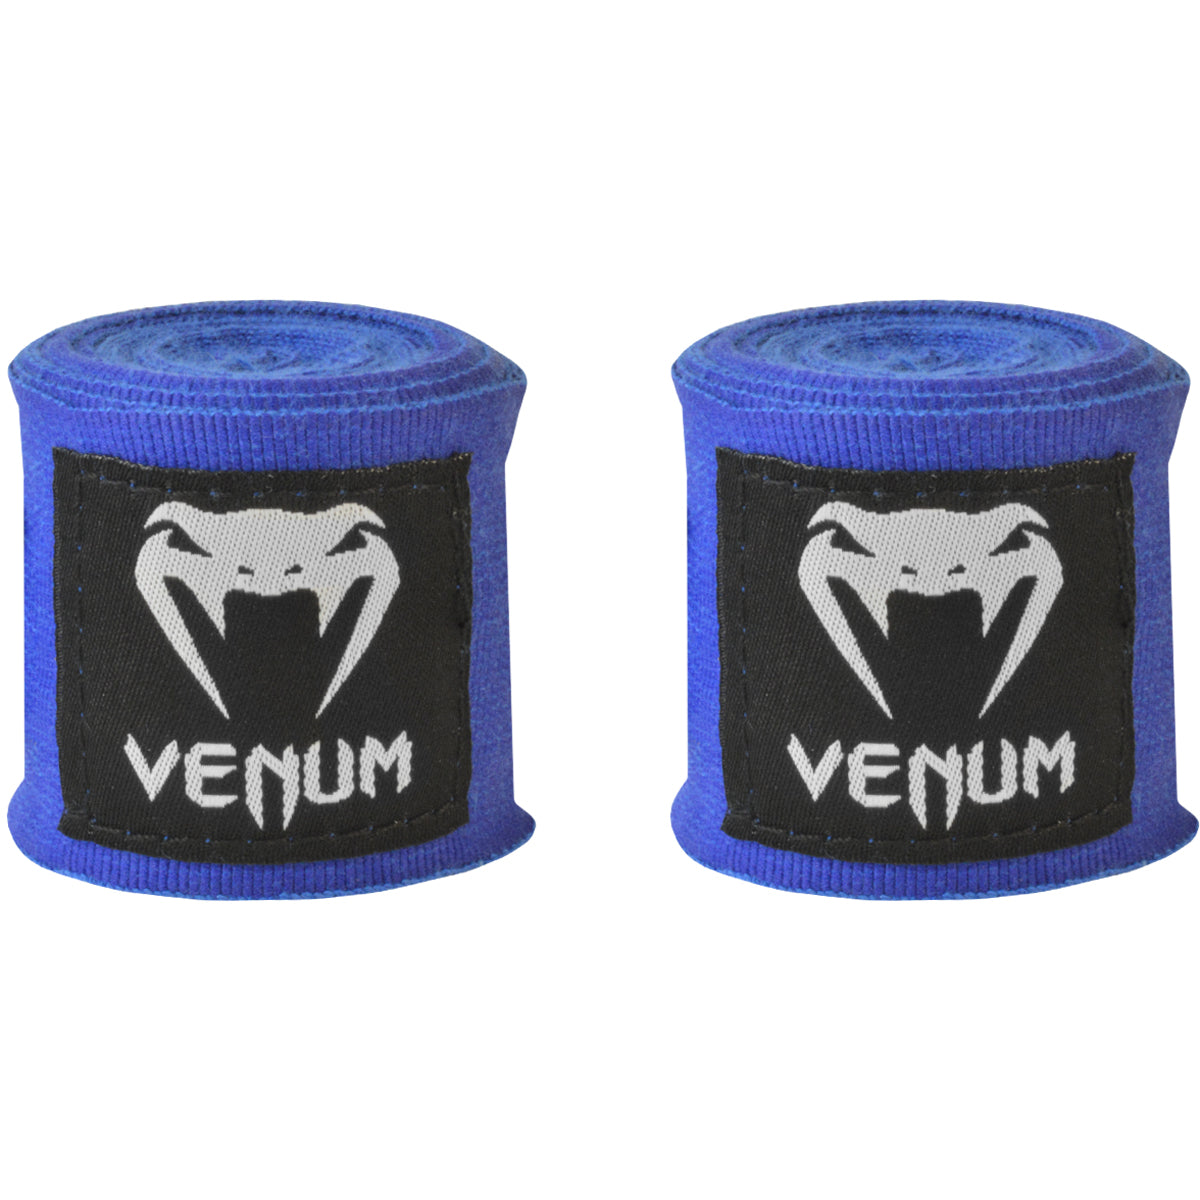 Venum Kontact 4m Elastic Cotton Mexican Style Protective Boxing Handwraps Venum